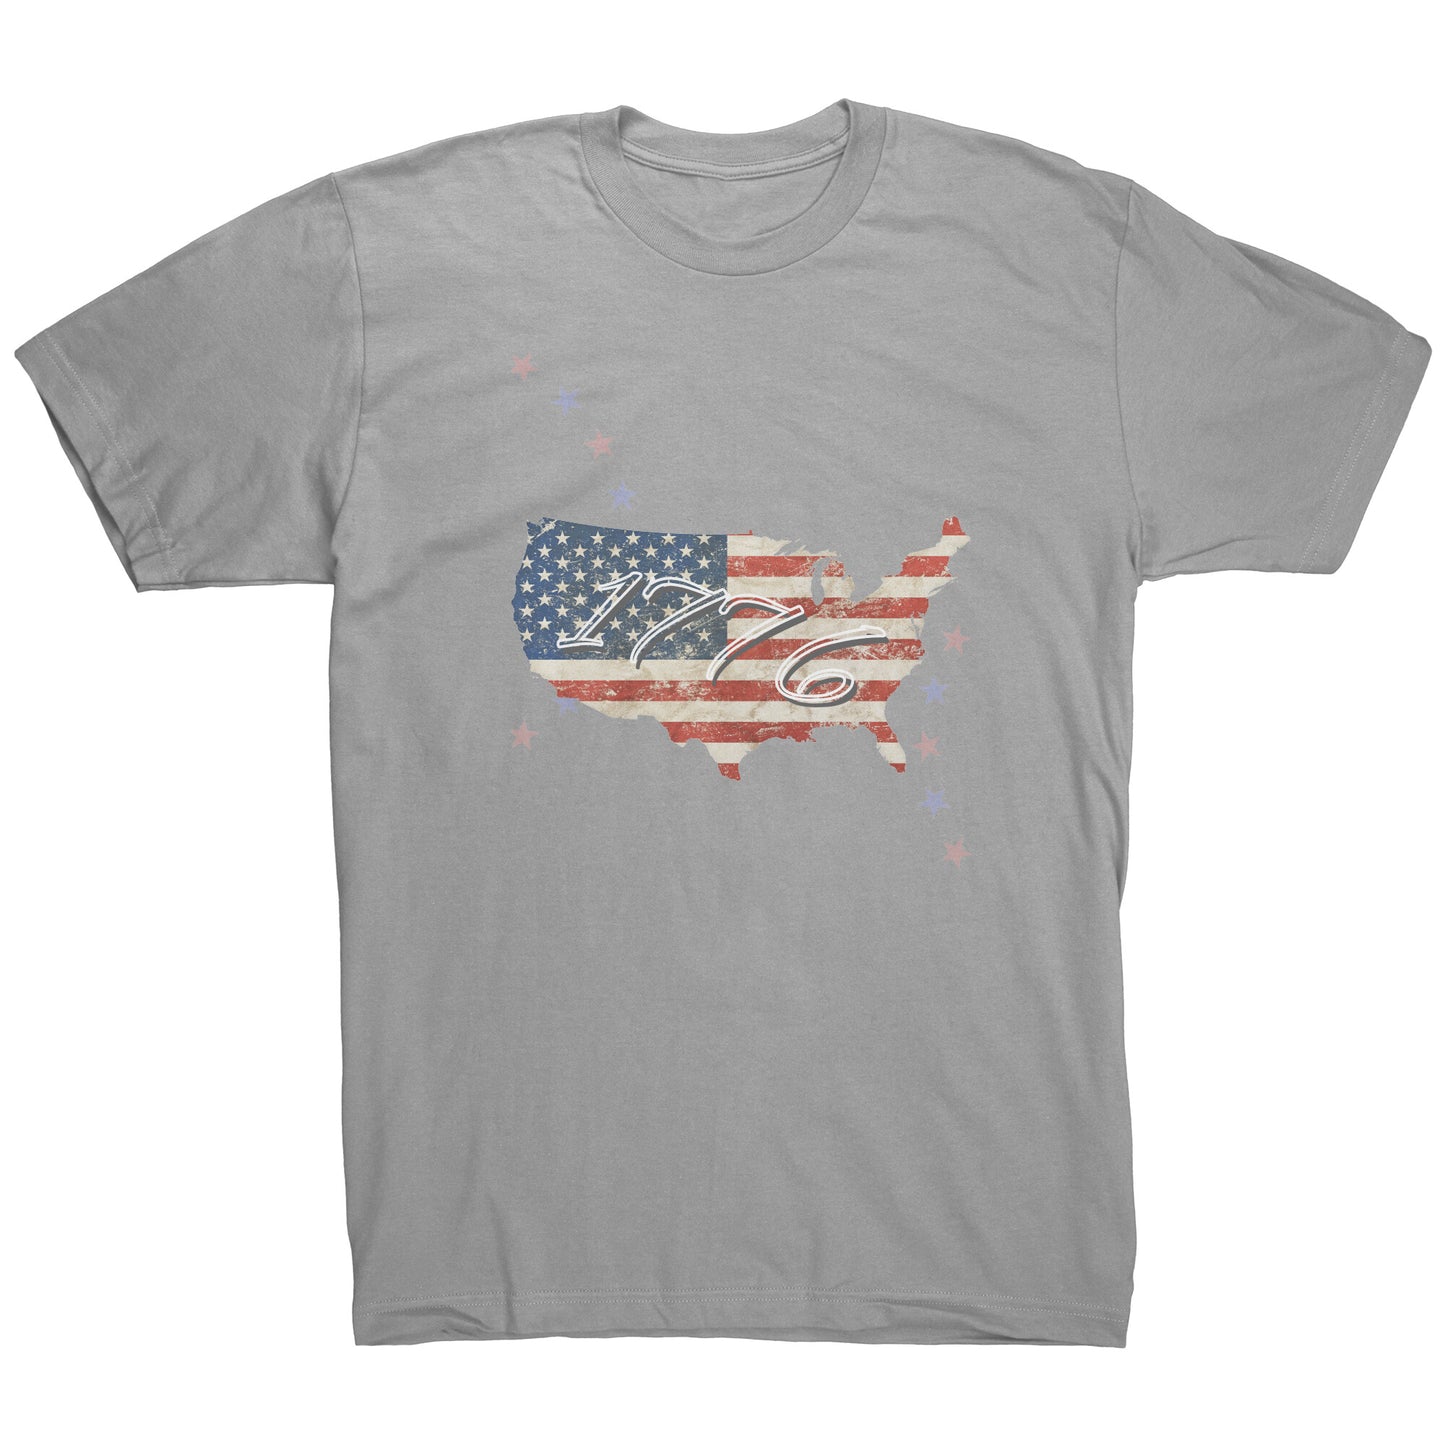 USA 1776 Tee Shirt